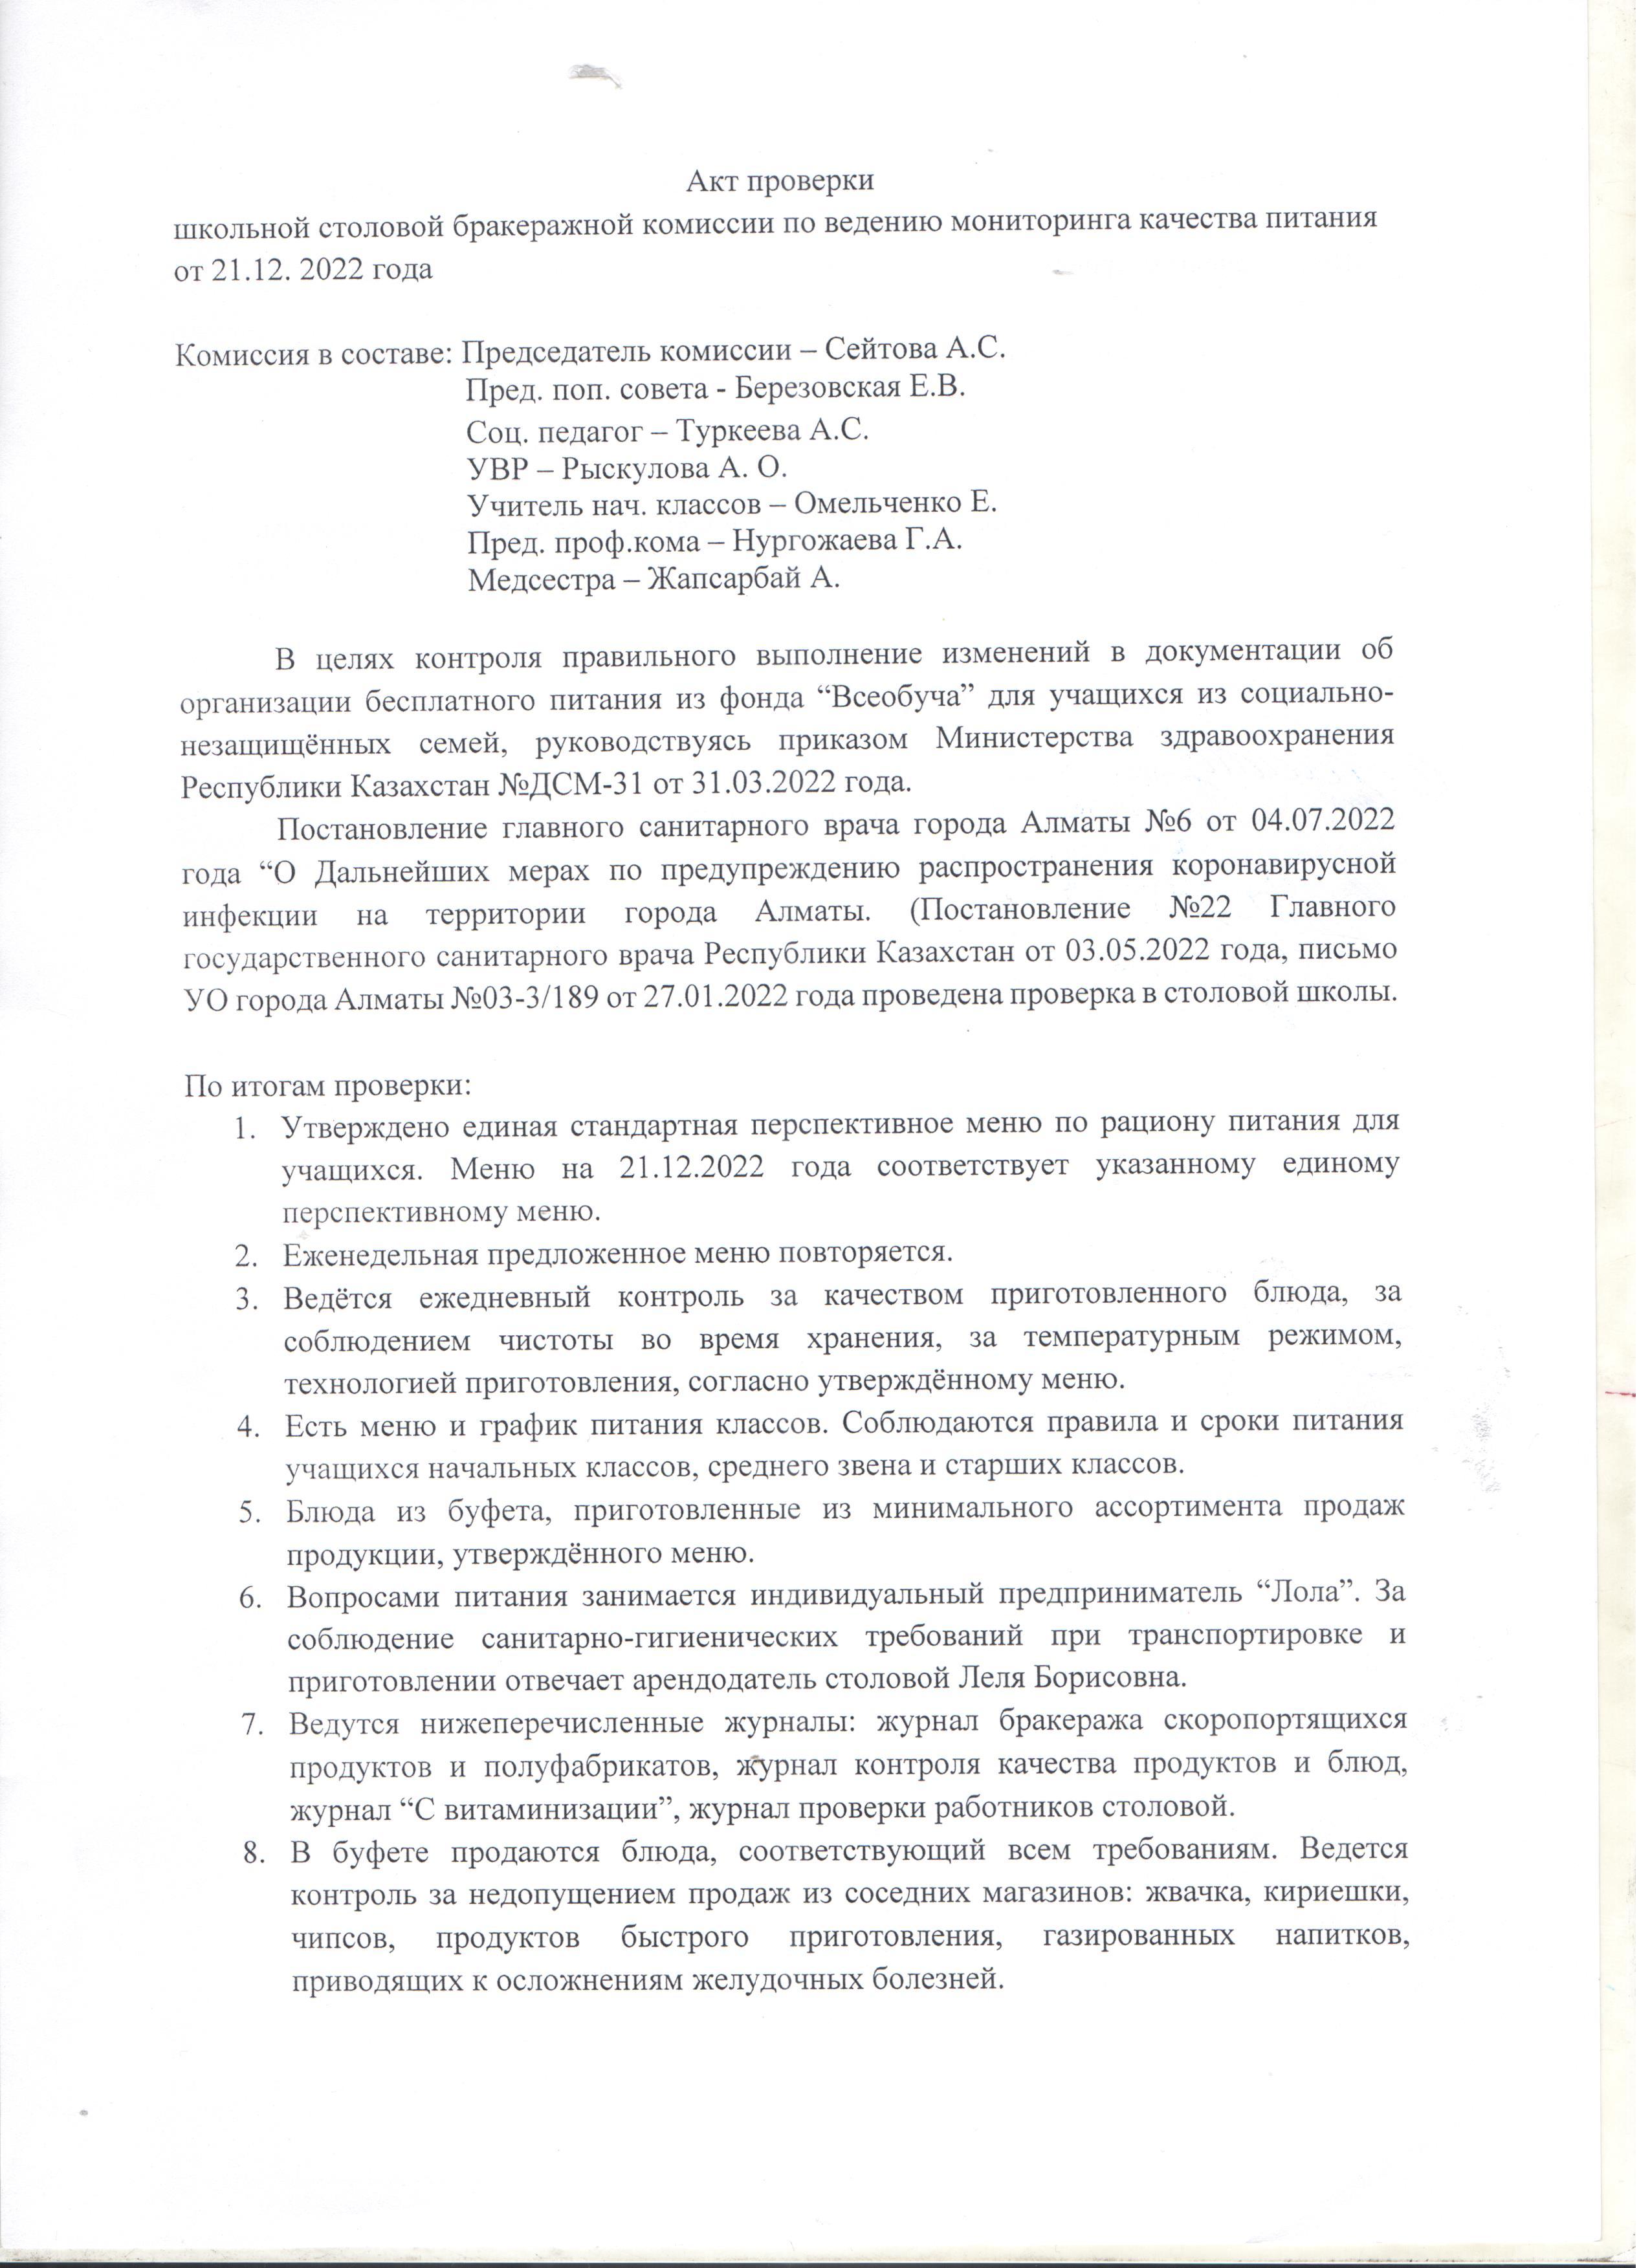 Акт проверки школьной столовой бракеражной комиссии от 21.12.2022